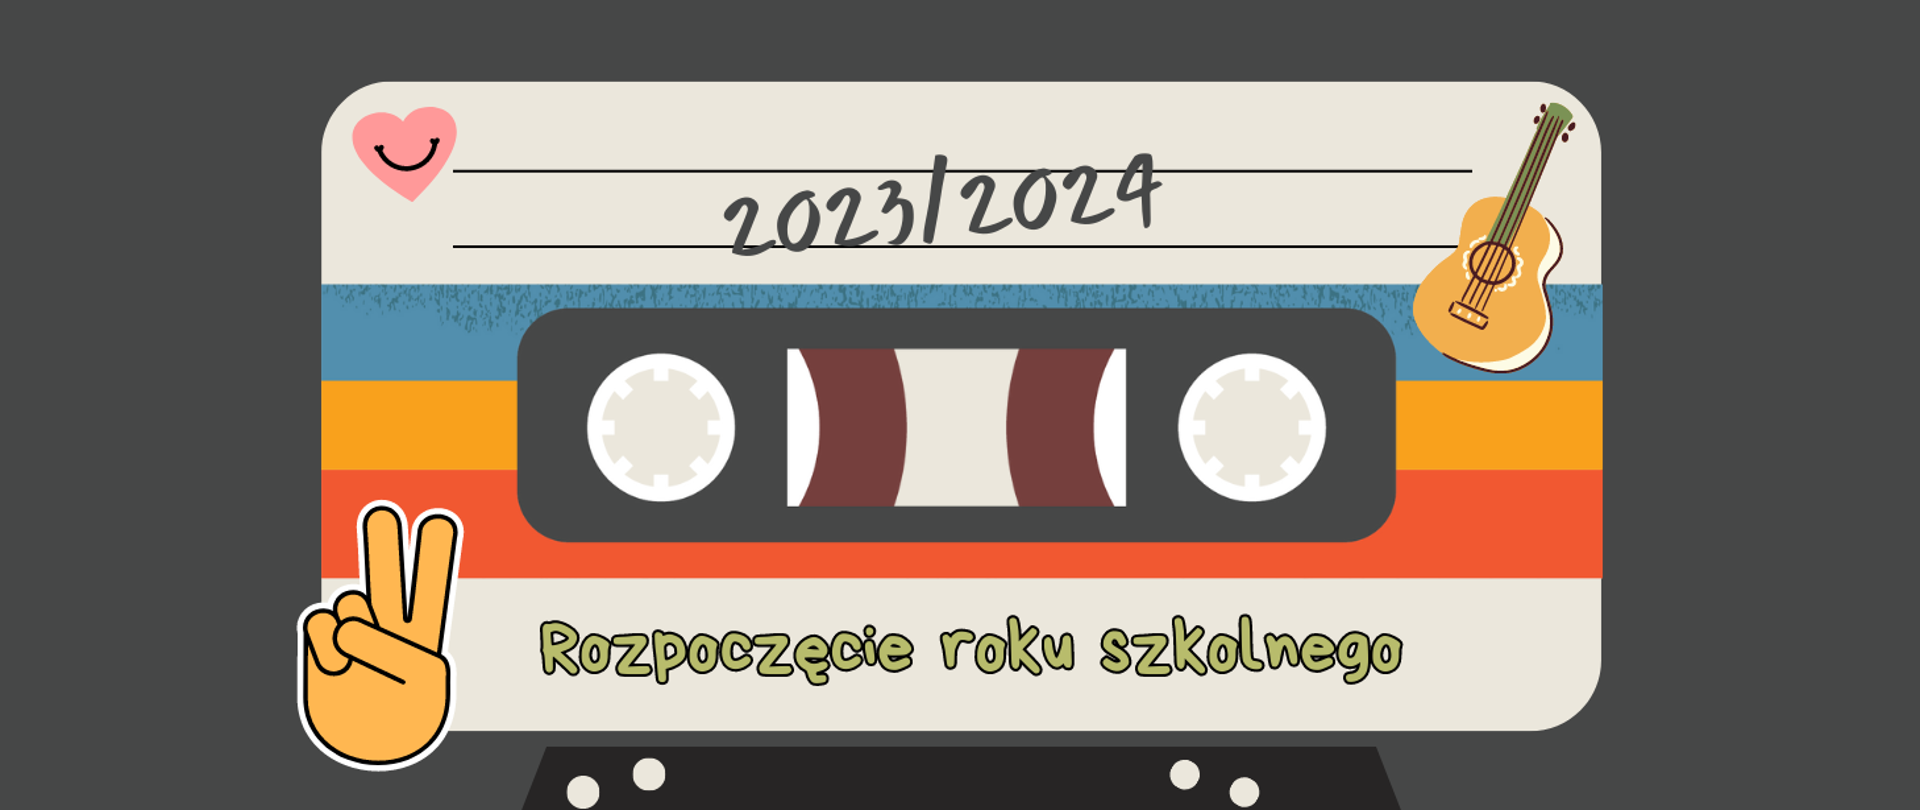 Grafika na grafitowym tle z motywem taśmy magnetofonowej i tekstem "Rozpoczęcie roku szkolnego 2023/2024"